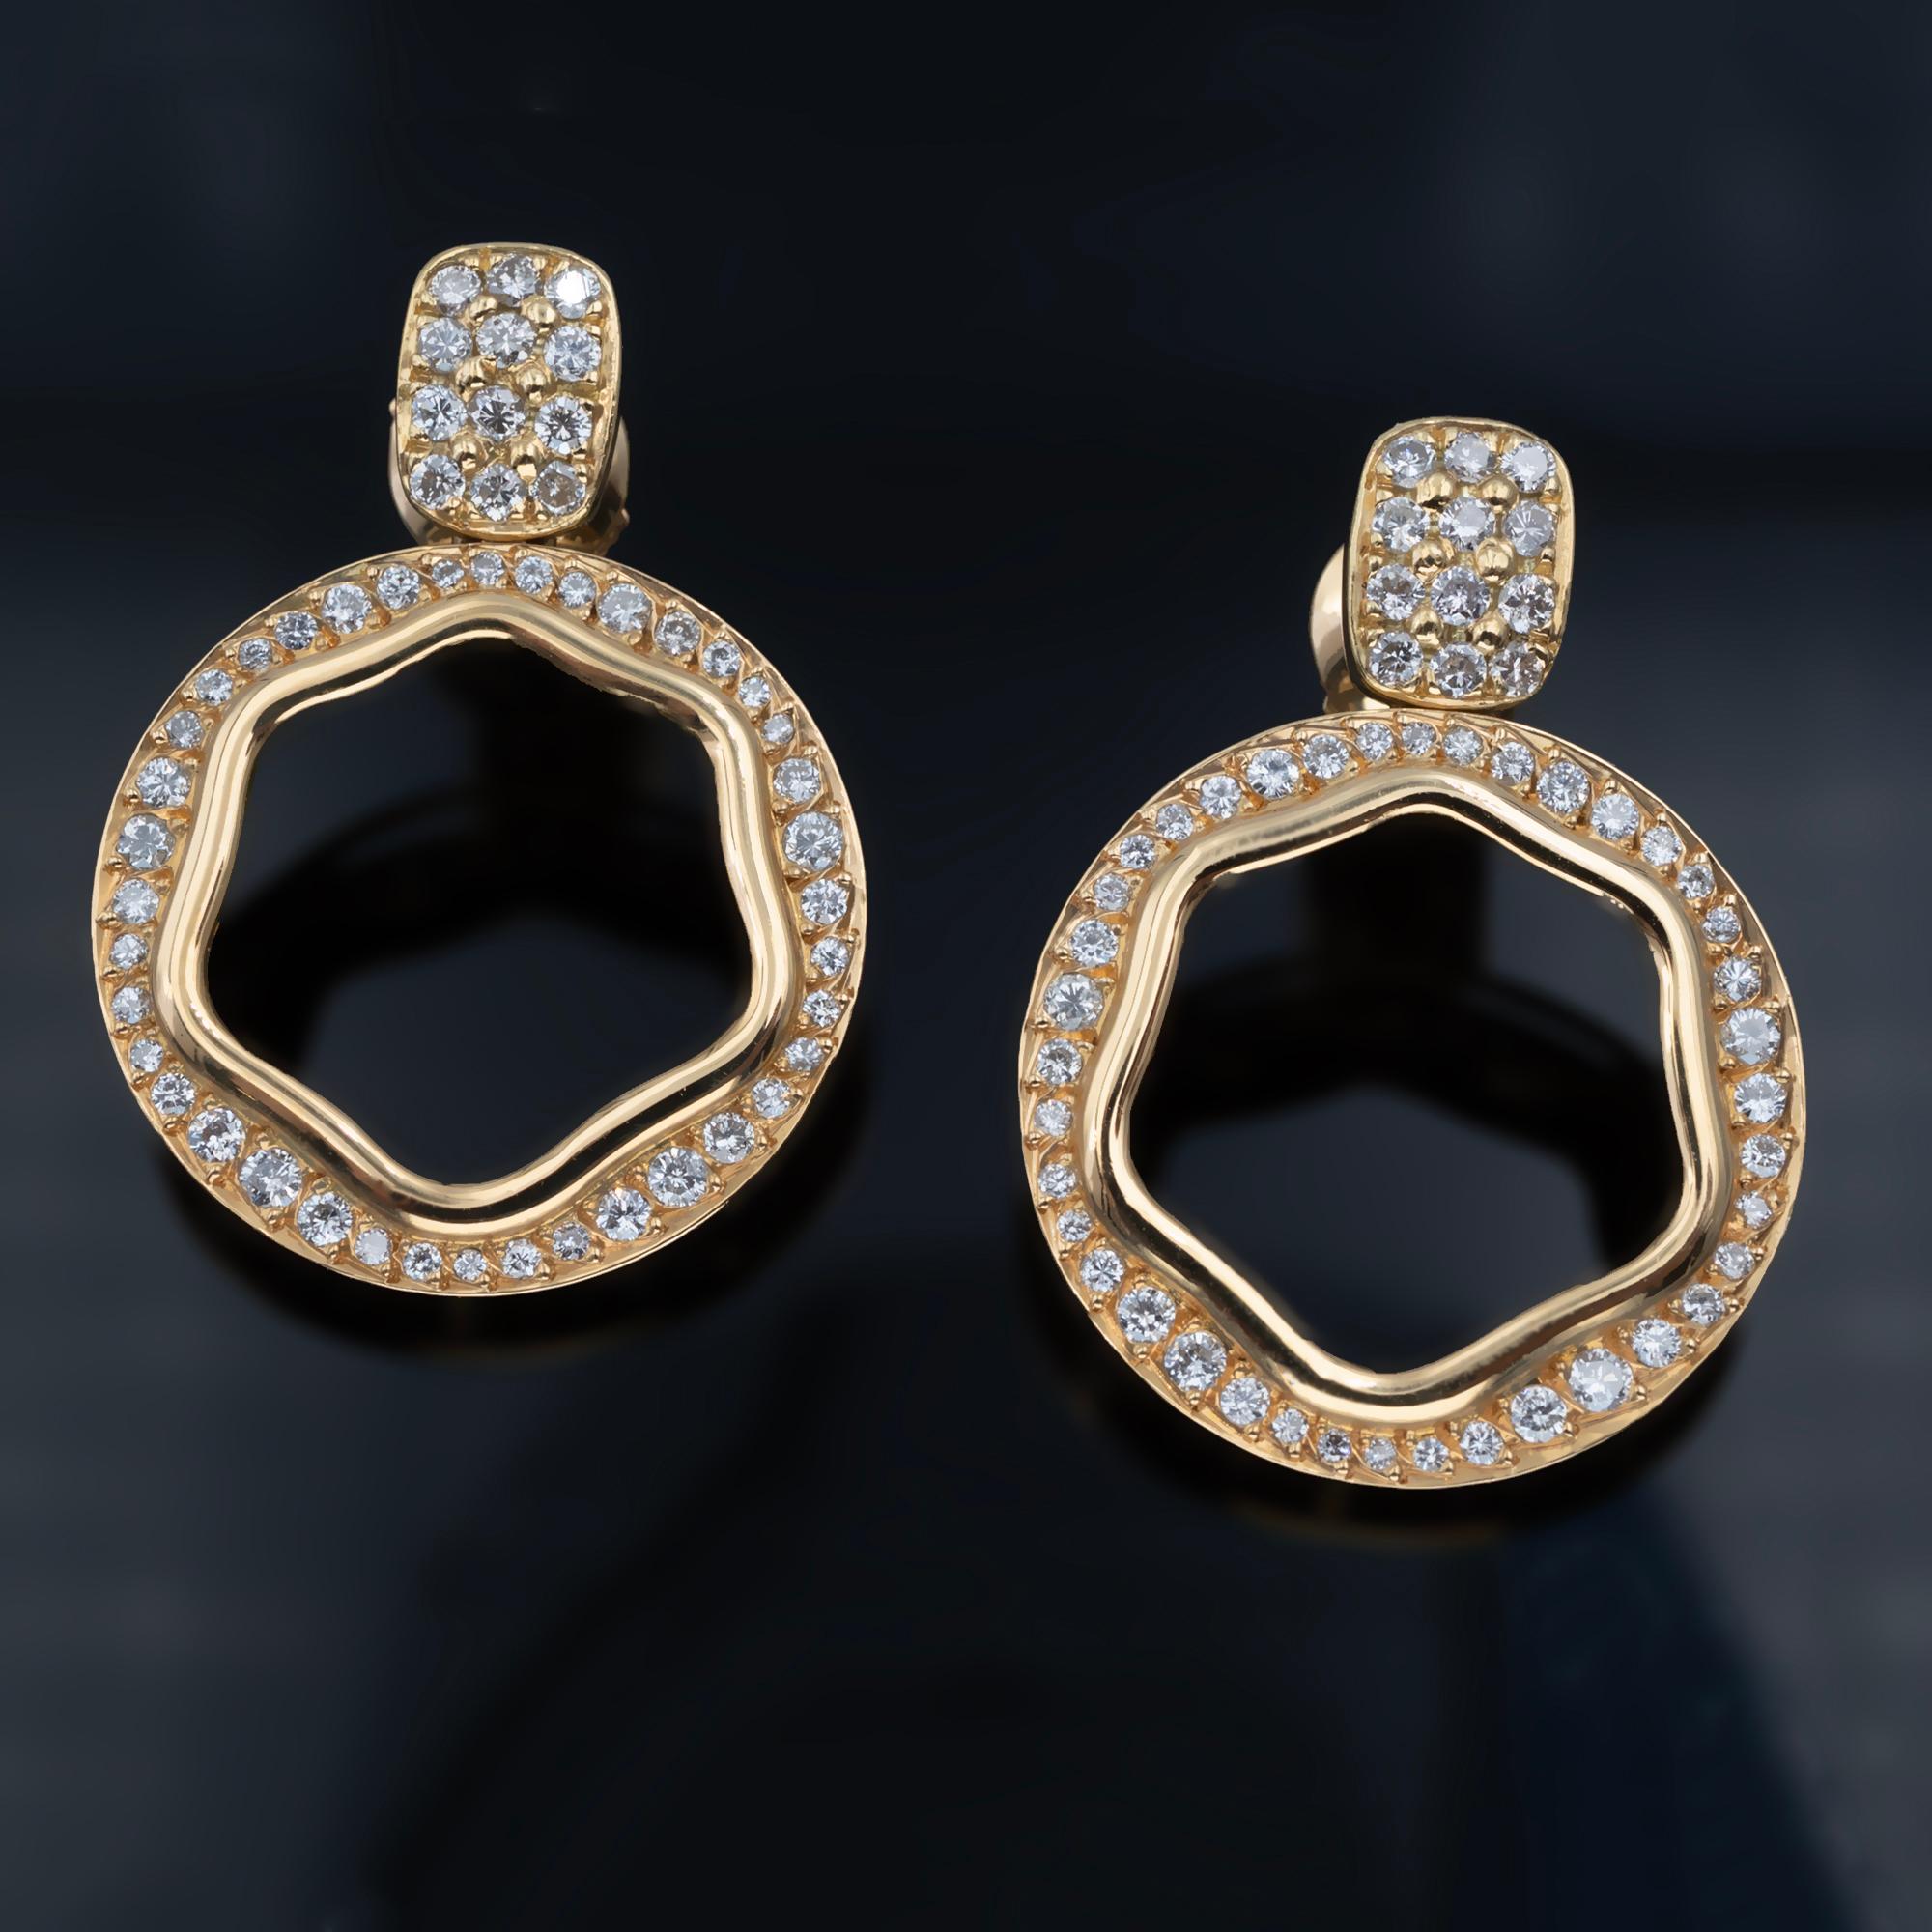 Nos boucles d'oreilles en or 18 carats et diamants sont un mélange parfait de style et de sophistication. 
Ces boucles d'oreilles présentent une forme circulaire délicatement suspendue à un clou serti de pavés, créant ainsi un design tendance et